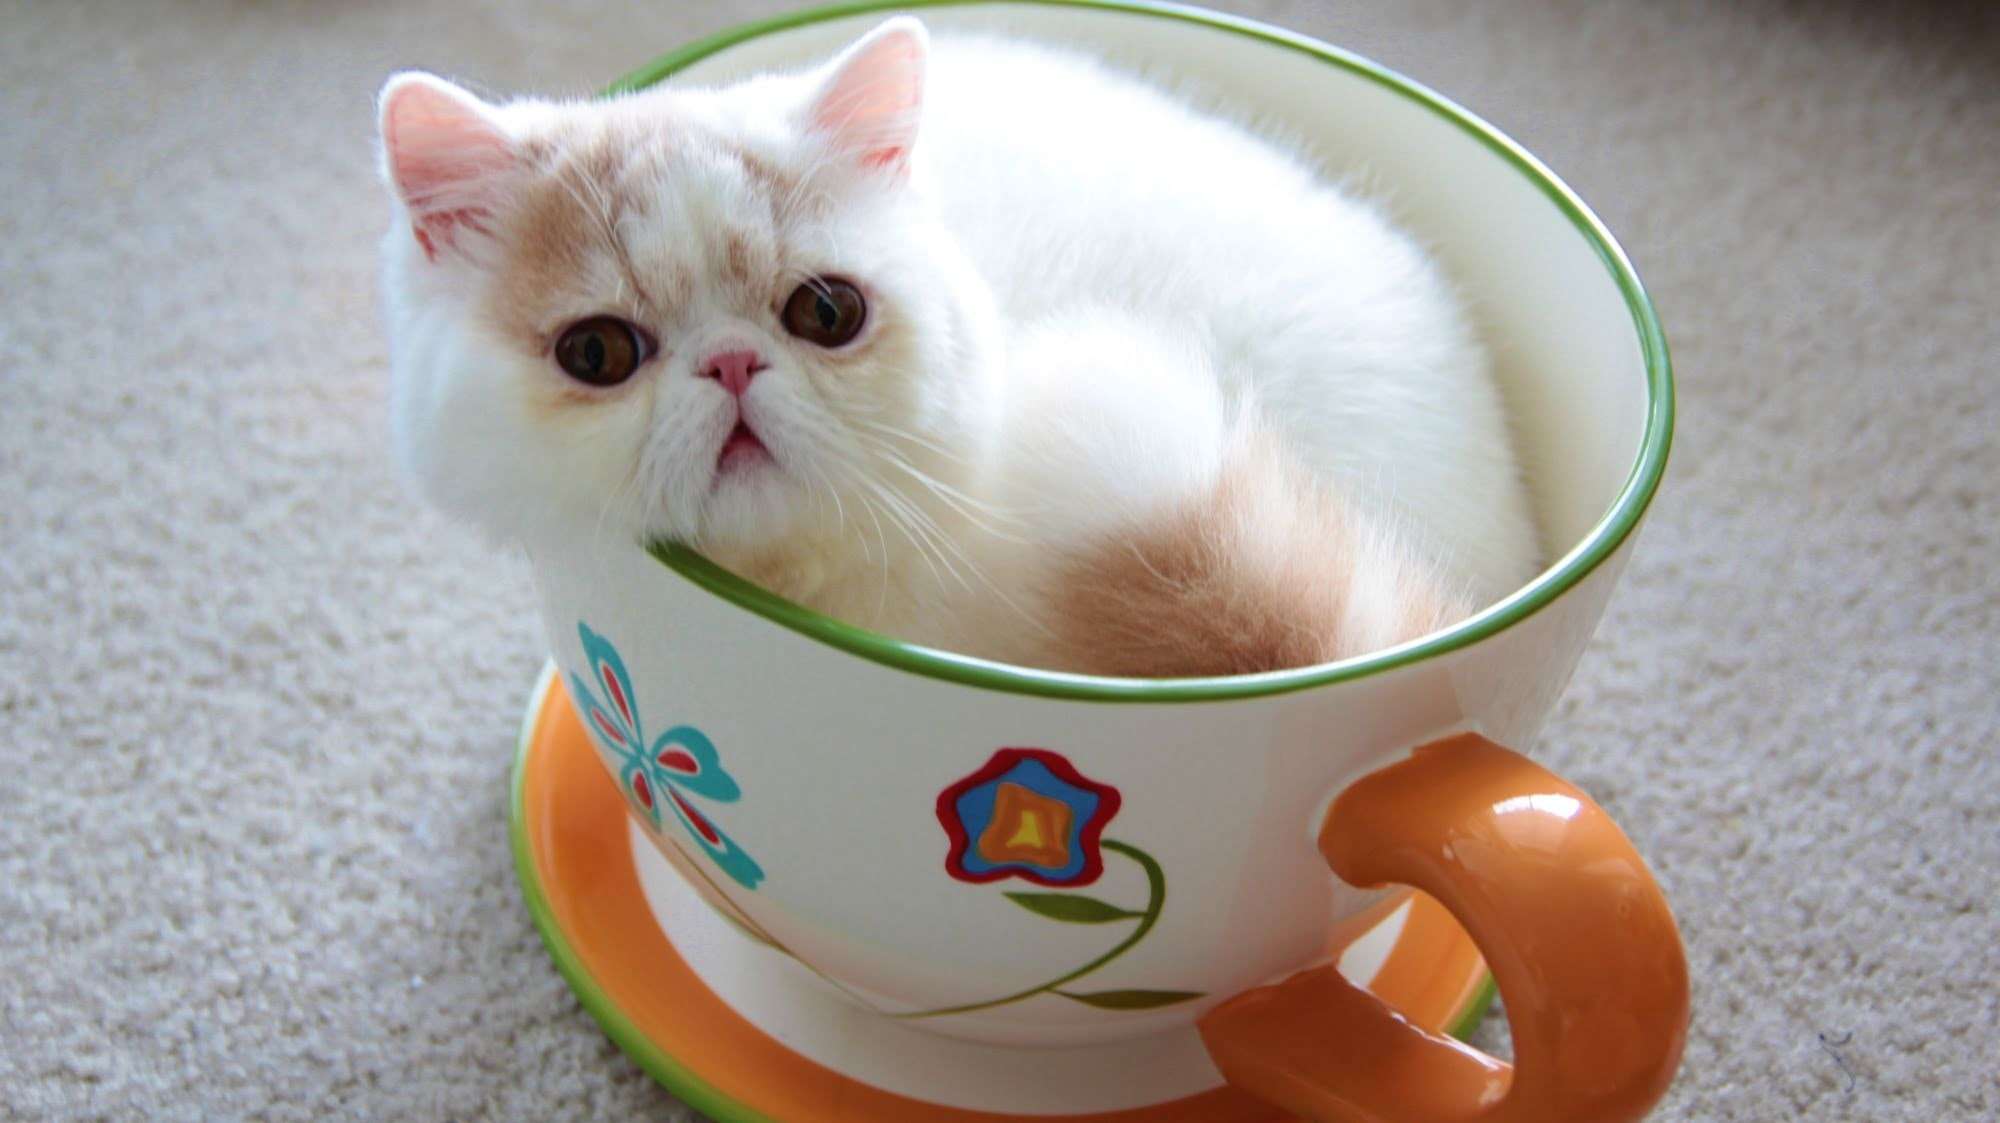 小猫和小狗在茶杯 库存图片. 图片 包括有 友谊, 蓝色, 年轻, 空白, 似猫, 逗人喜爱, 茶杯, 背包 - 33760545